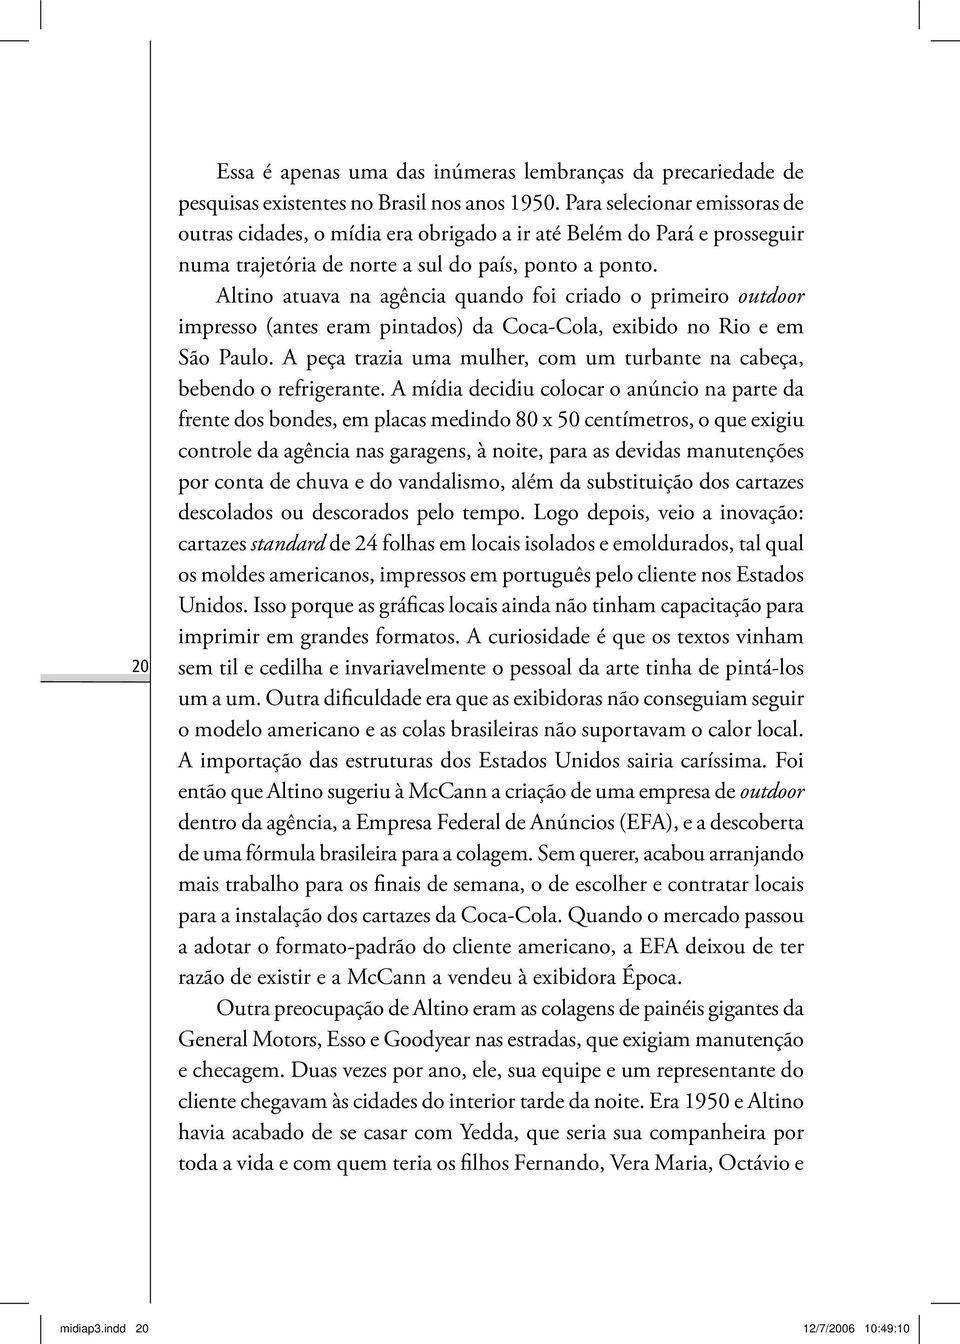 Altino atuava na agência quando foi criado o primeiro outdoor impresso (antes eram pintados) da Coca-Cola, exibido no Rio e em São Paulo.